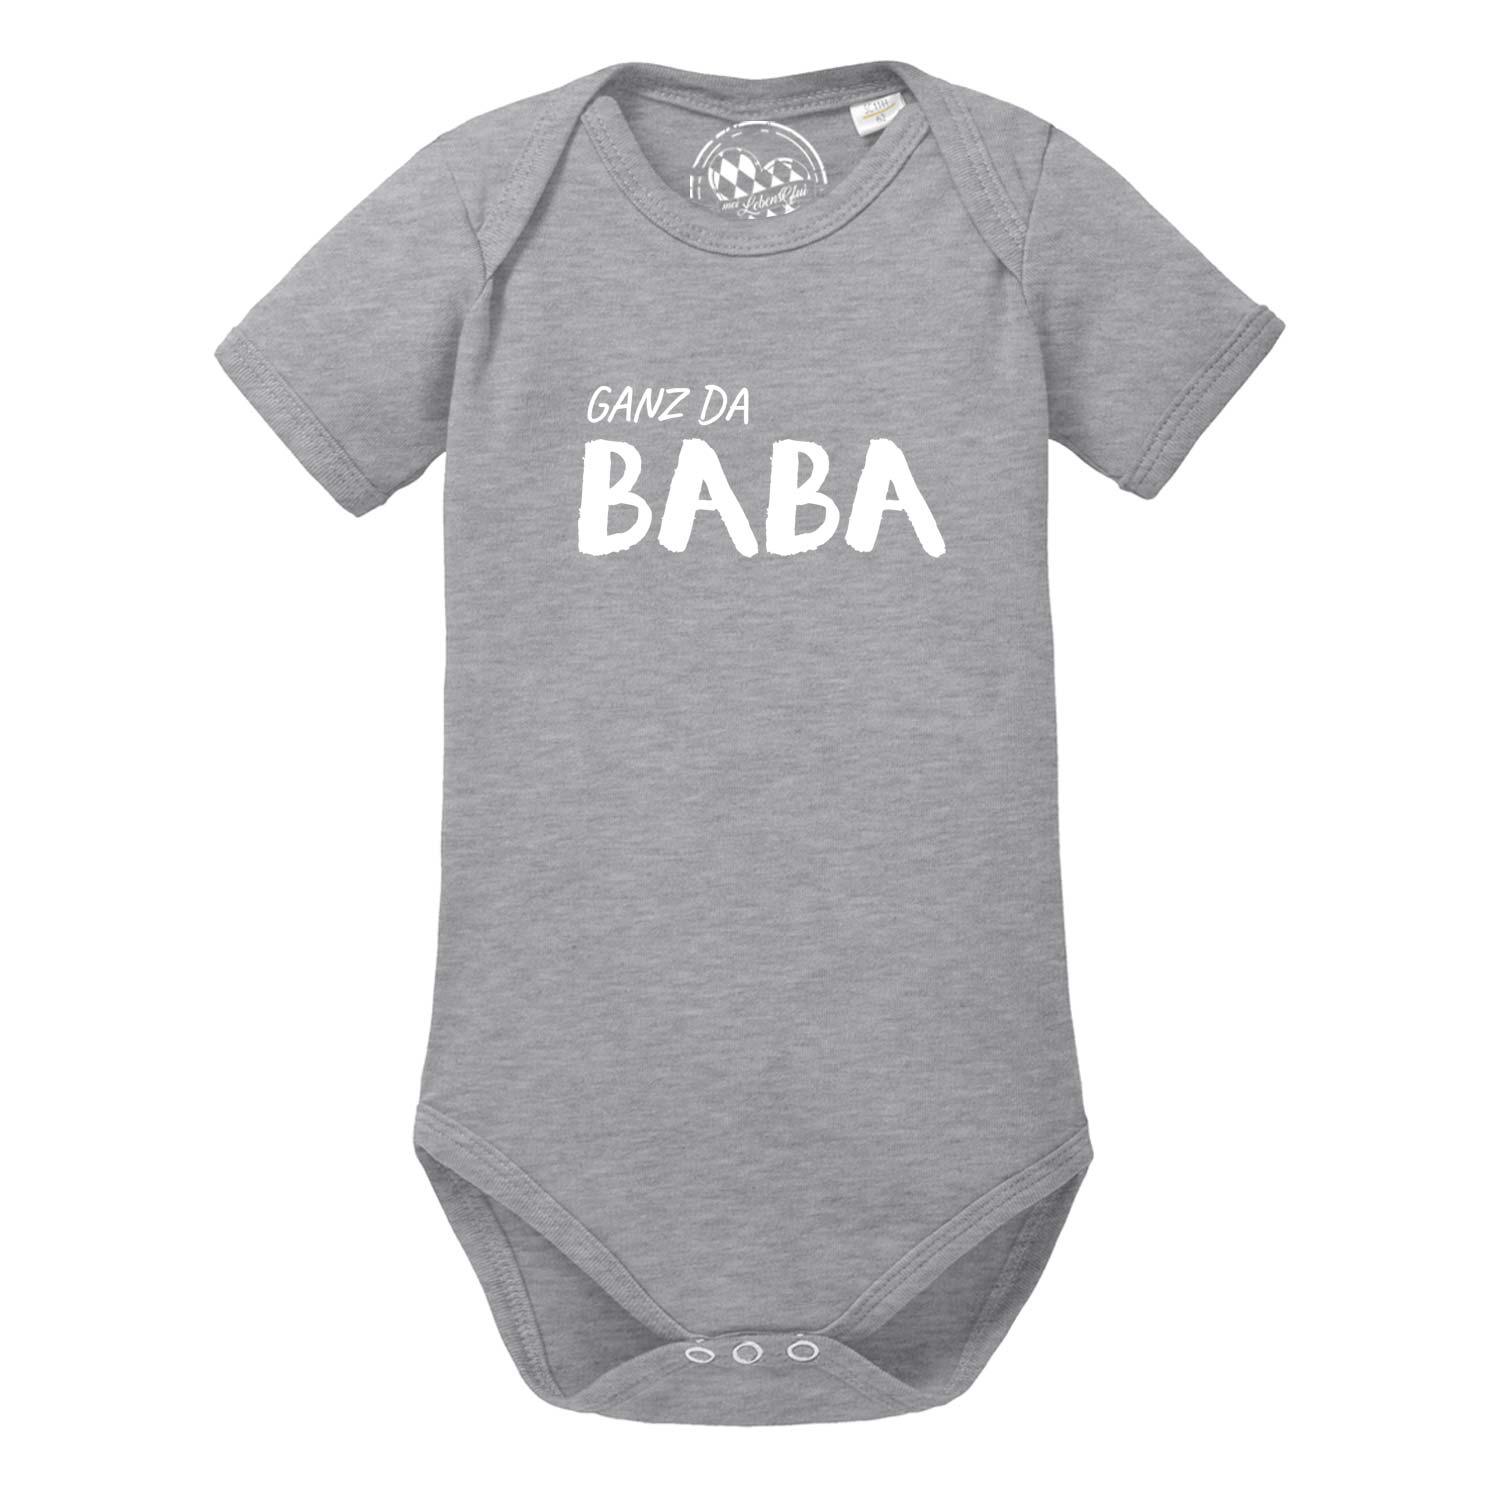 Baby Body "Ganz da Baba!" - bavariashop - mei LebensGfui